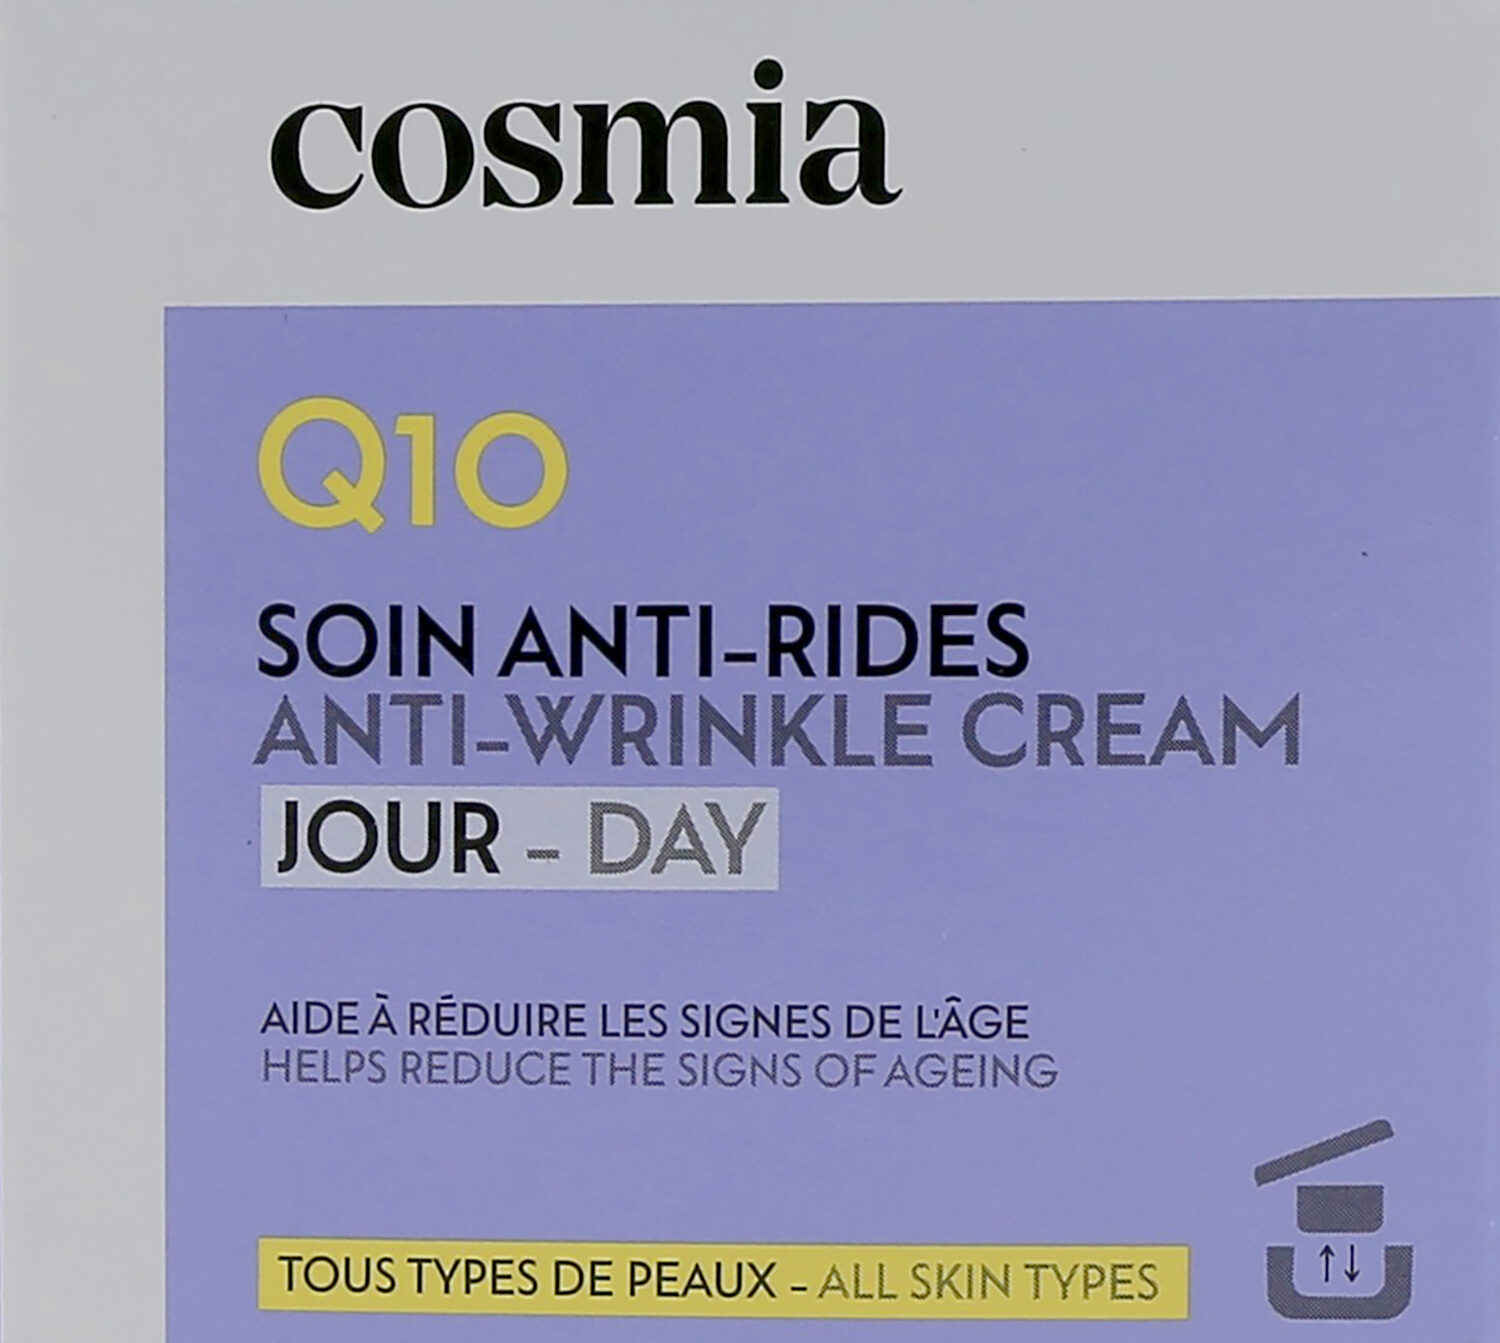 Cosmia creme jour anti ride - q10 - 50ml - Produto - fr